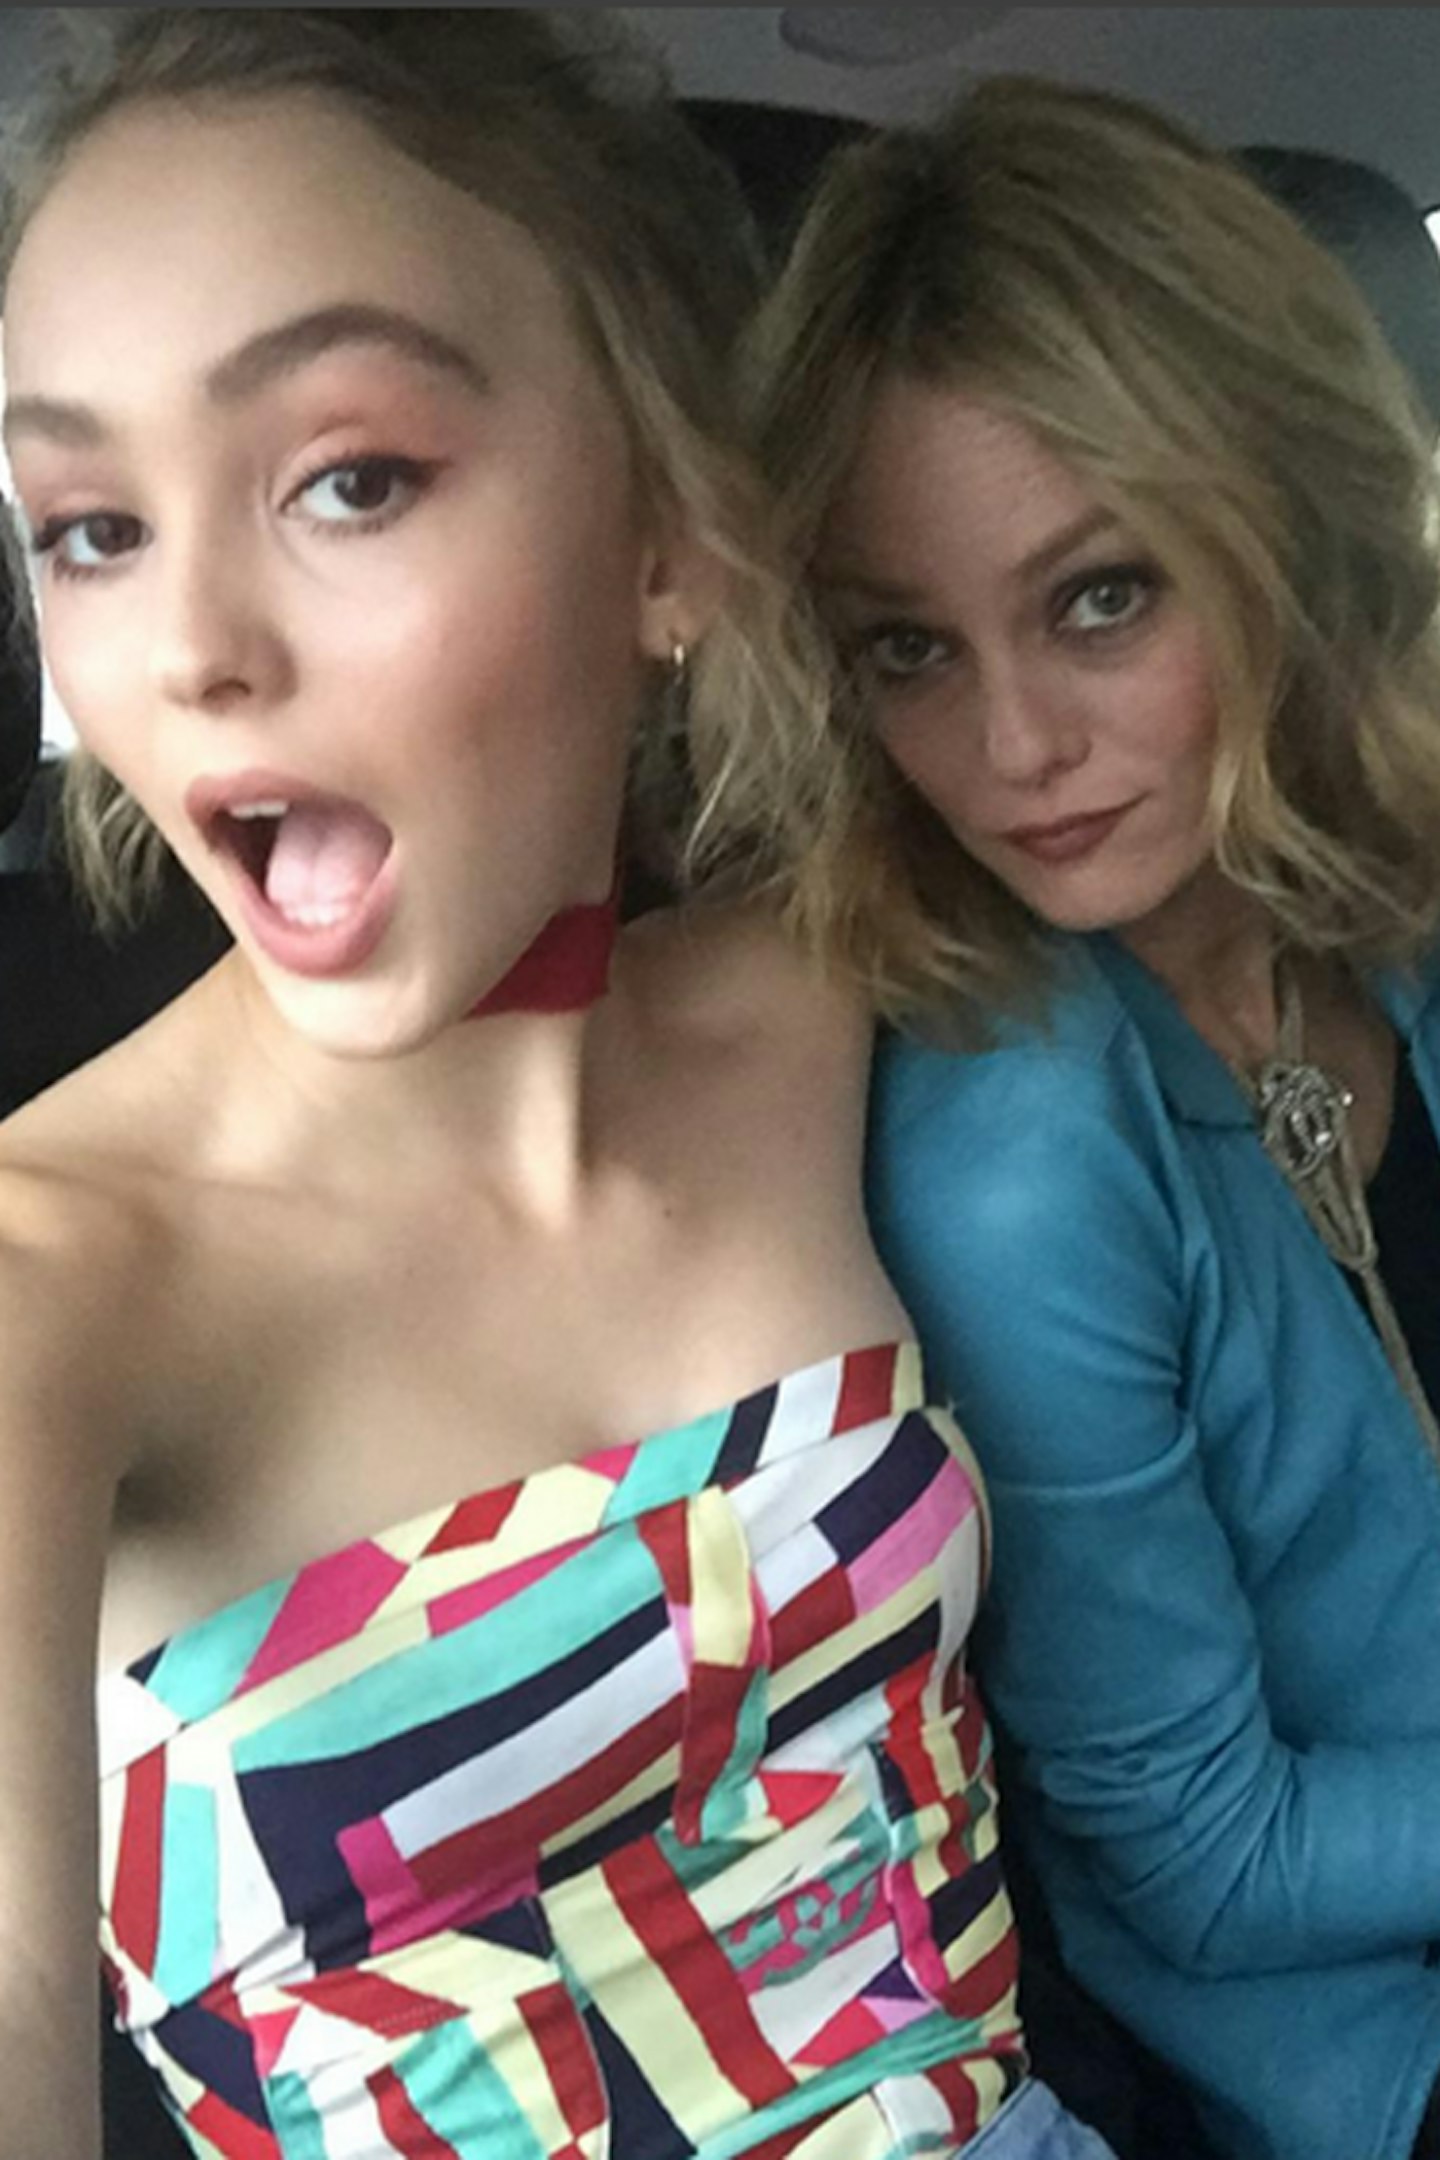 Lily-Rose Depp's Instagram